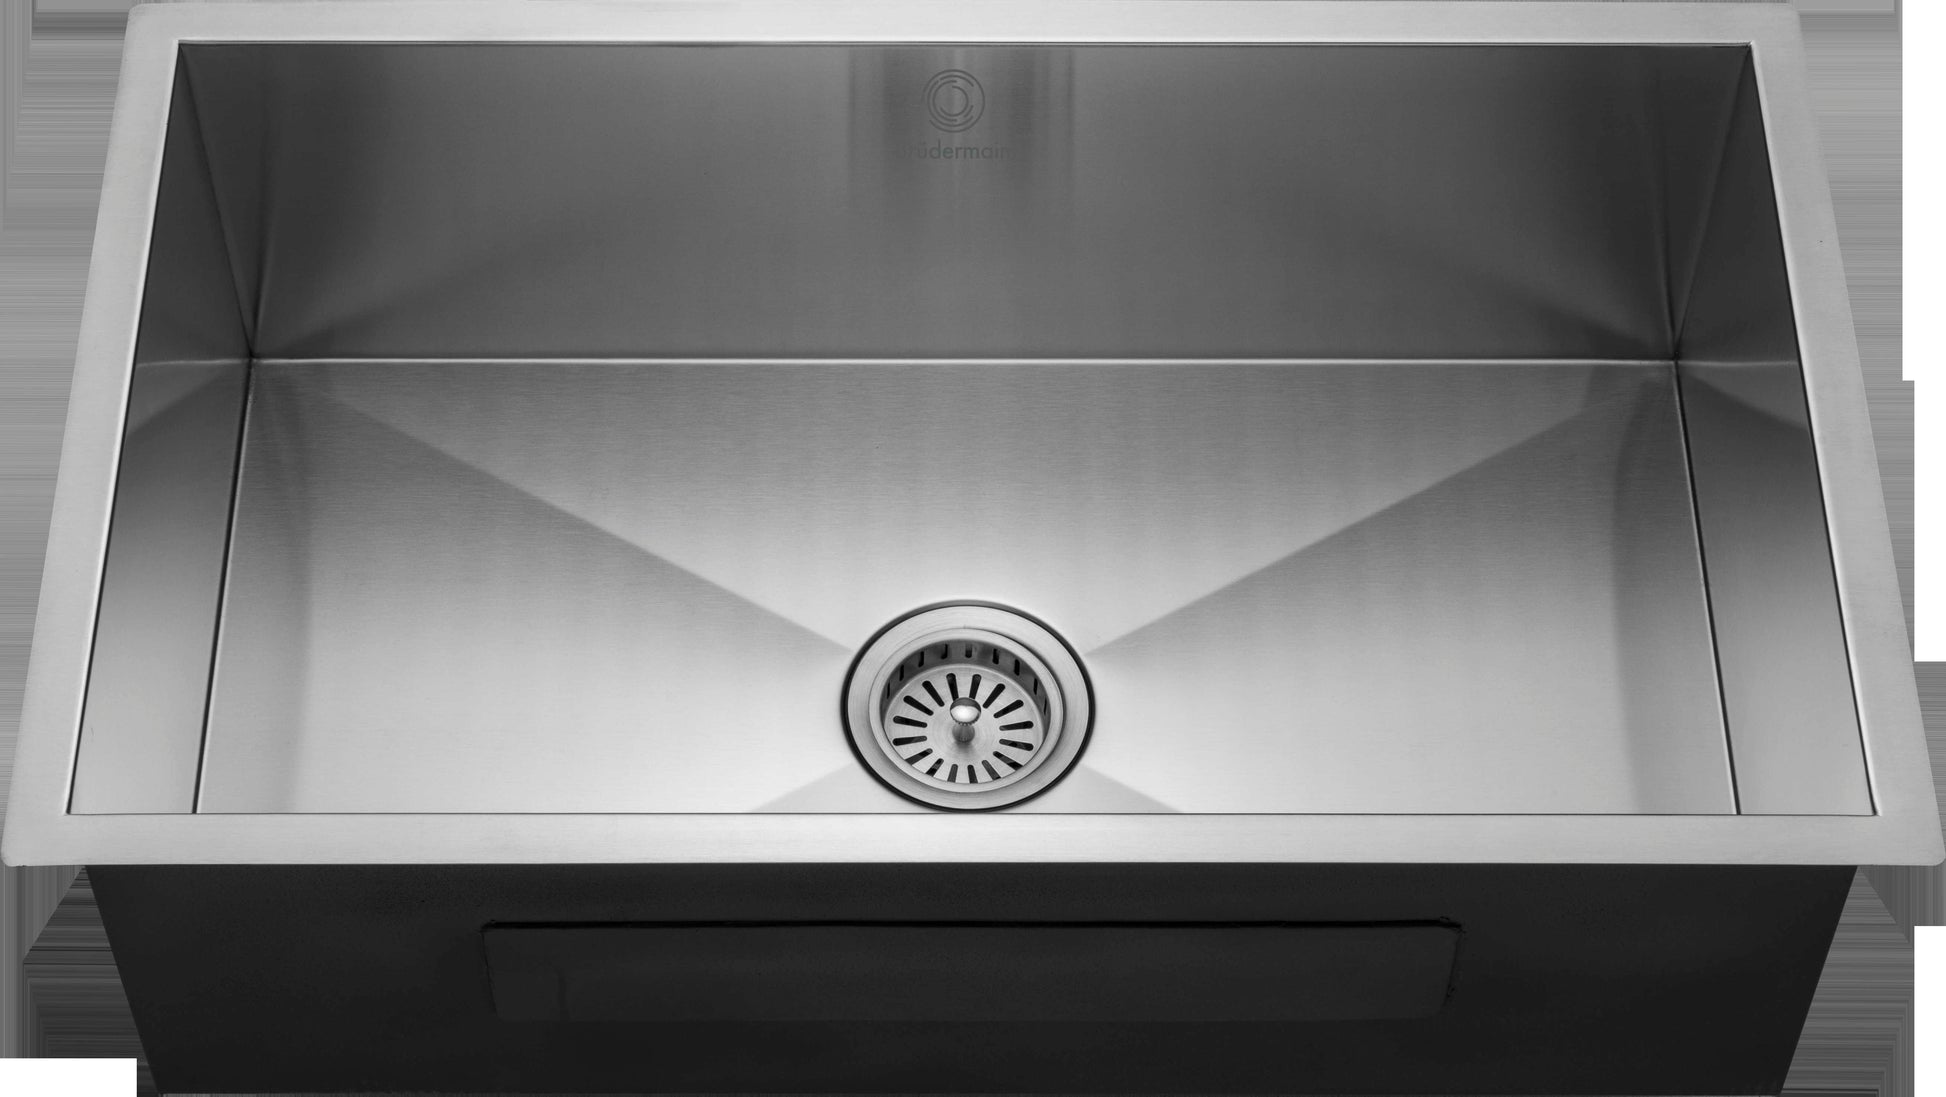 Kitchen Sink - Stainless Steel - BRUDERMAIM 30x18x9 Inch 16 gauge Handcrafted T304 Stainless Steel Undermount Kitchen Sink Zero Radius Single Bowl.